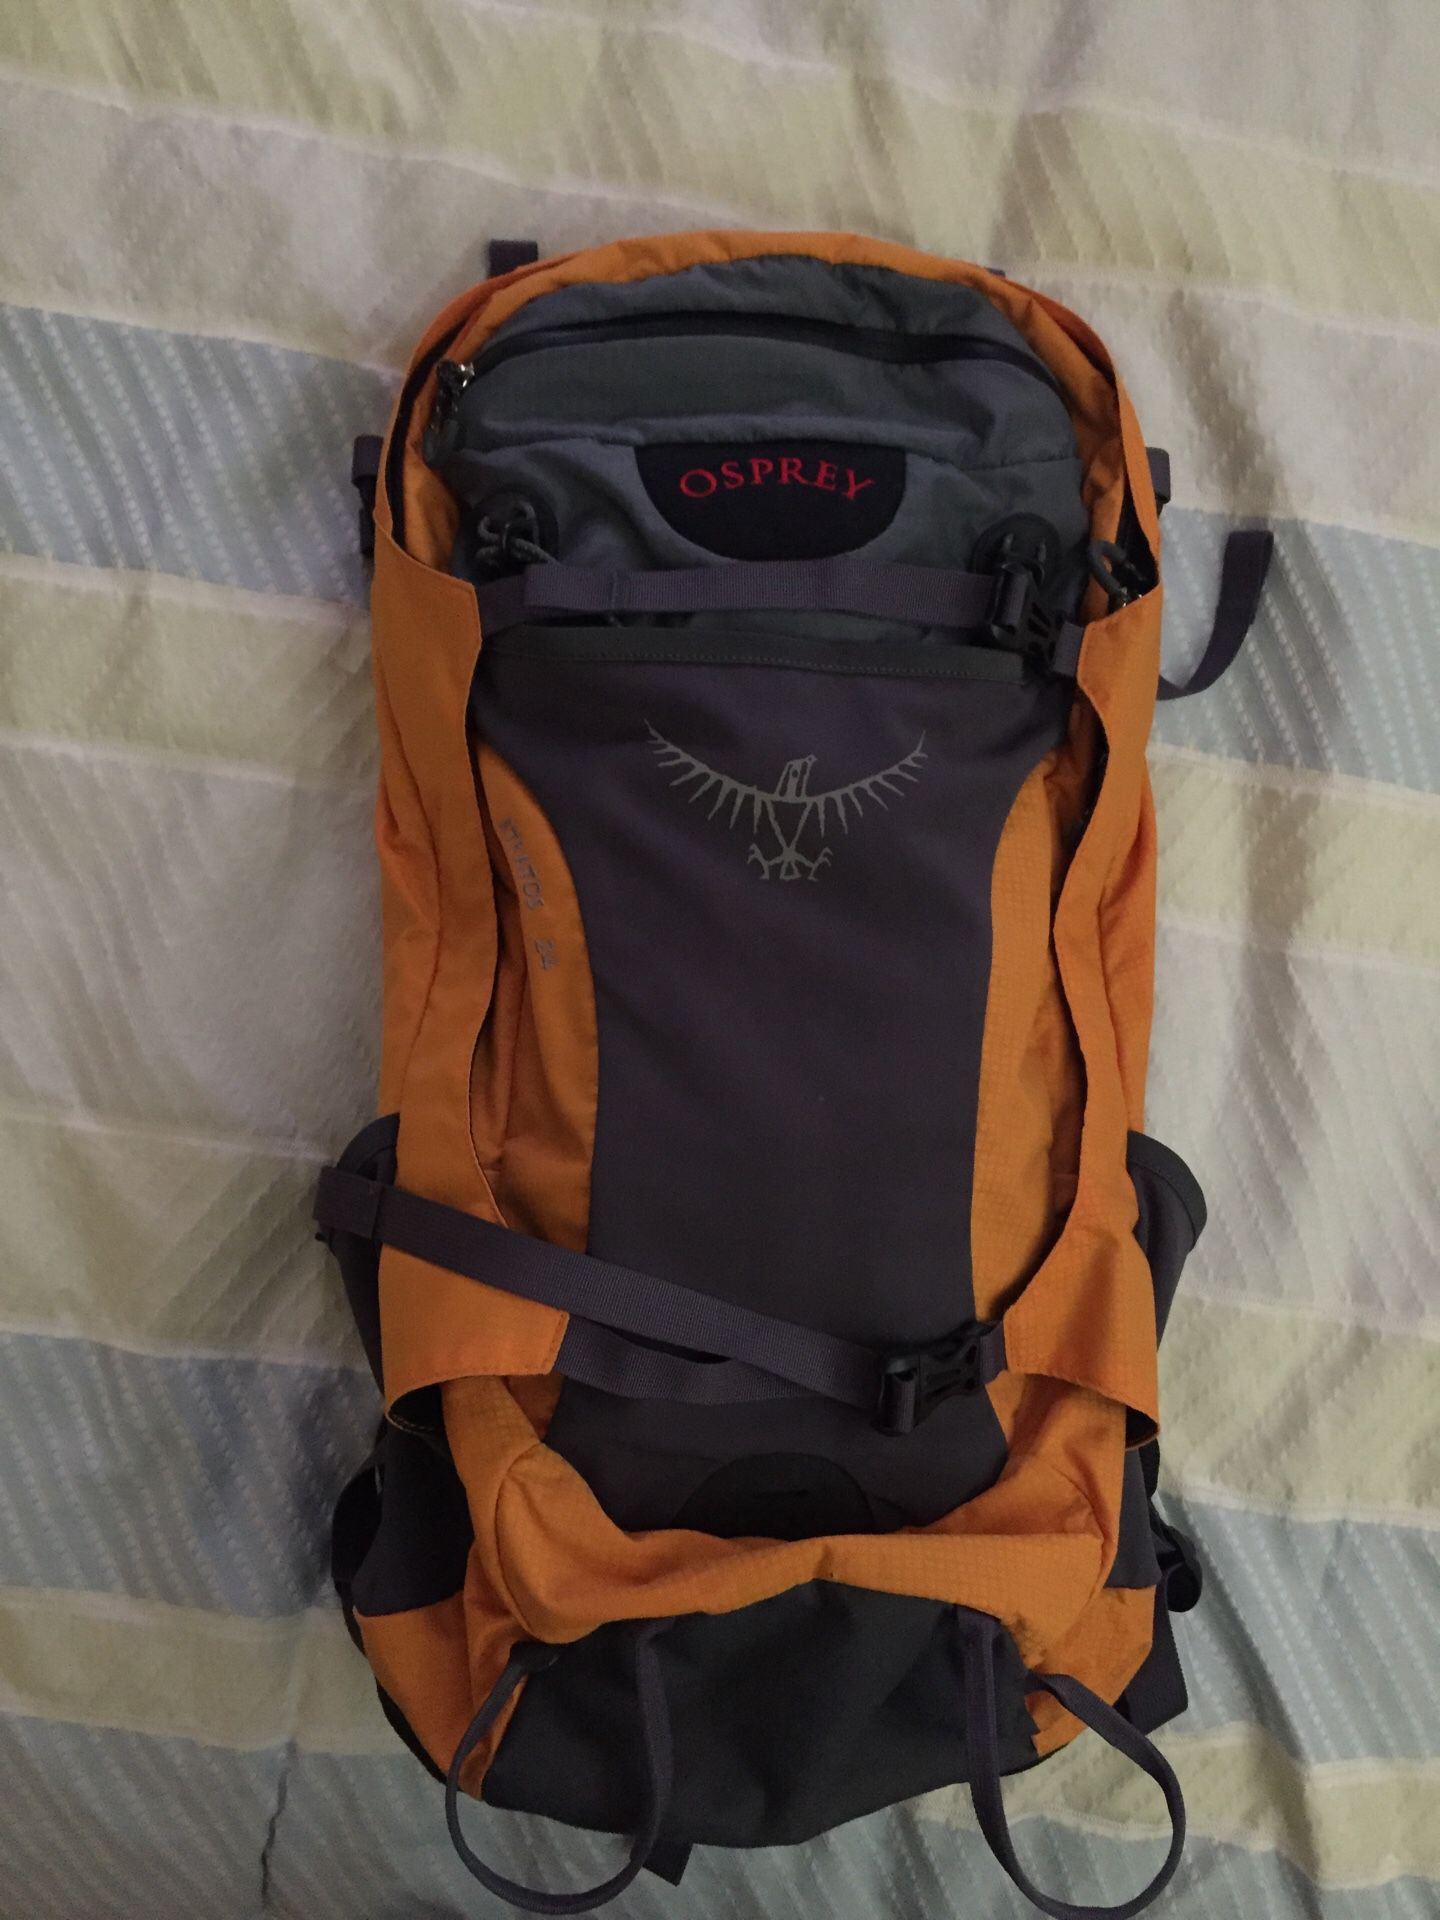 Osprey stratos 24 hiking backpack